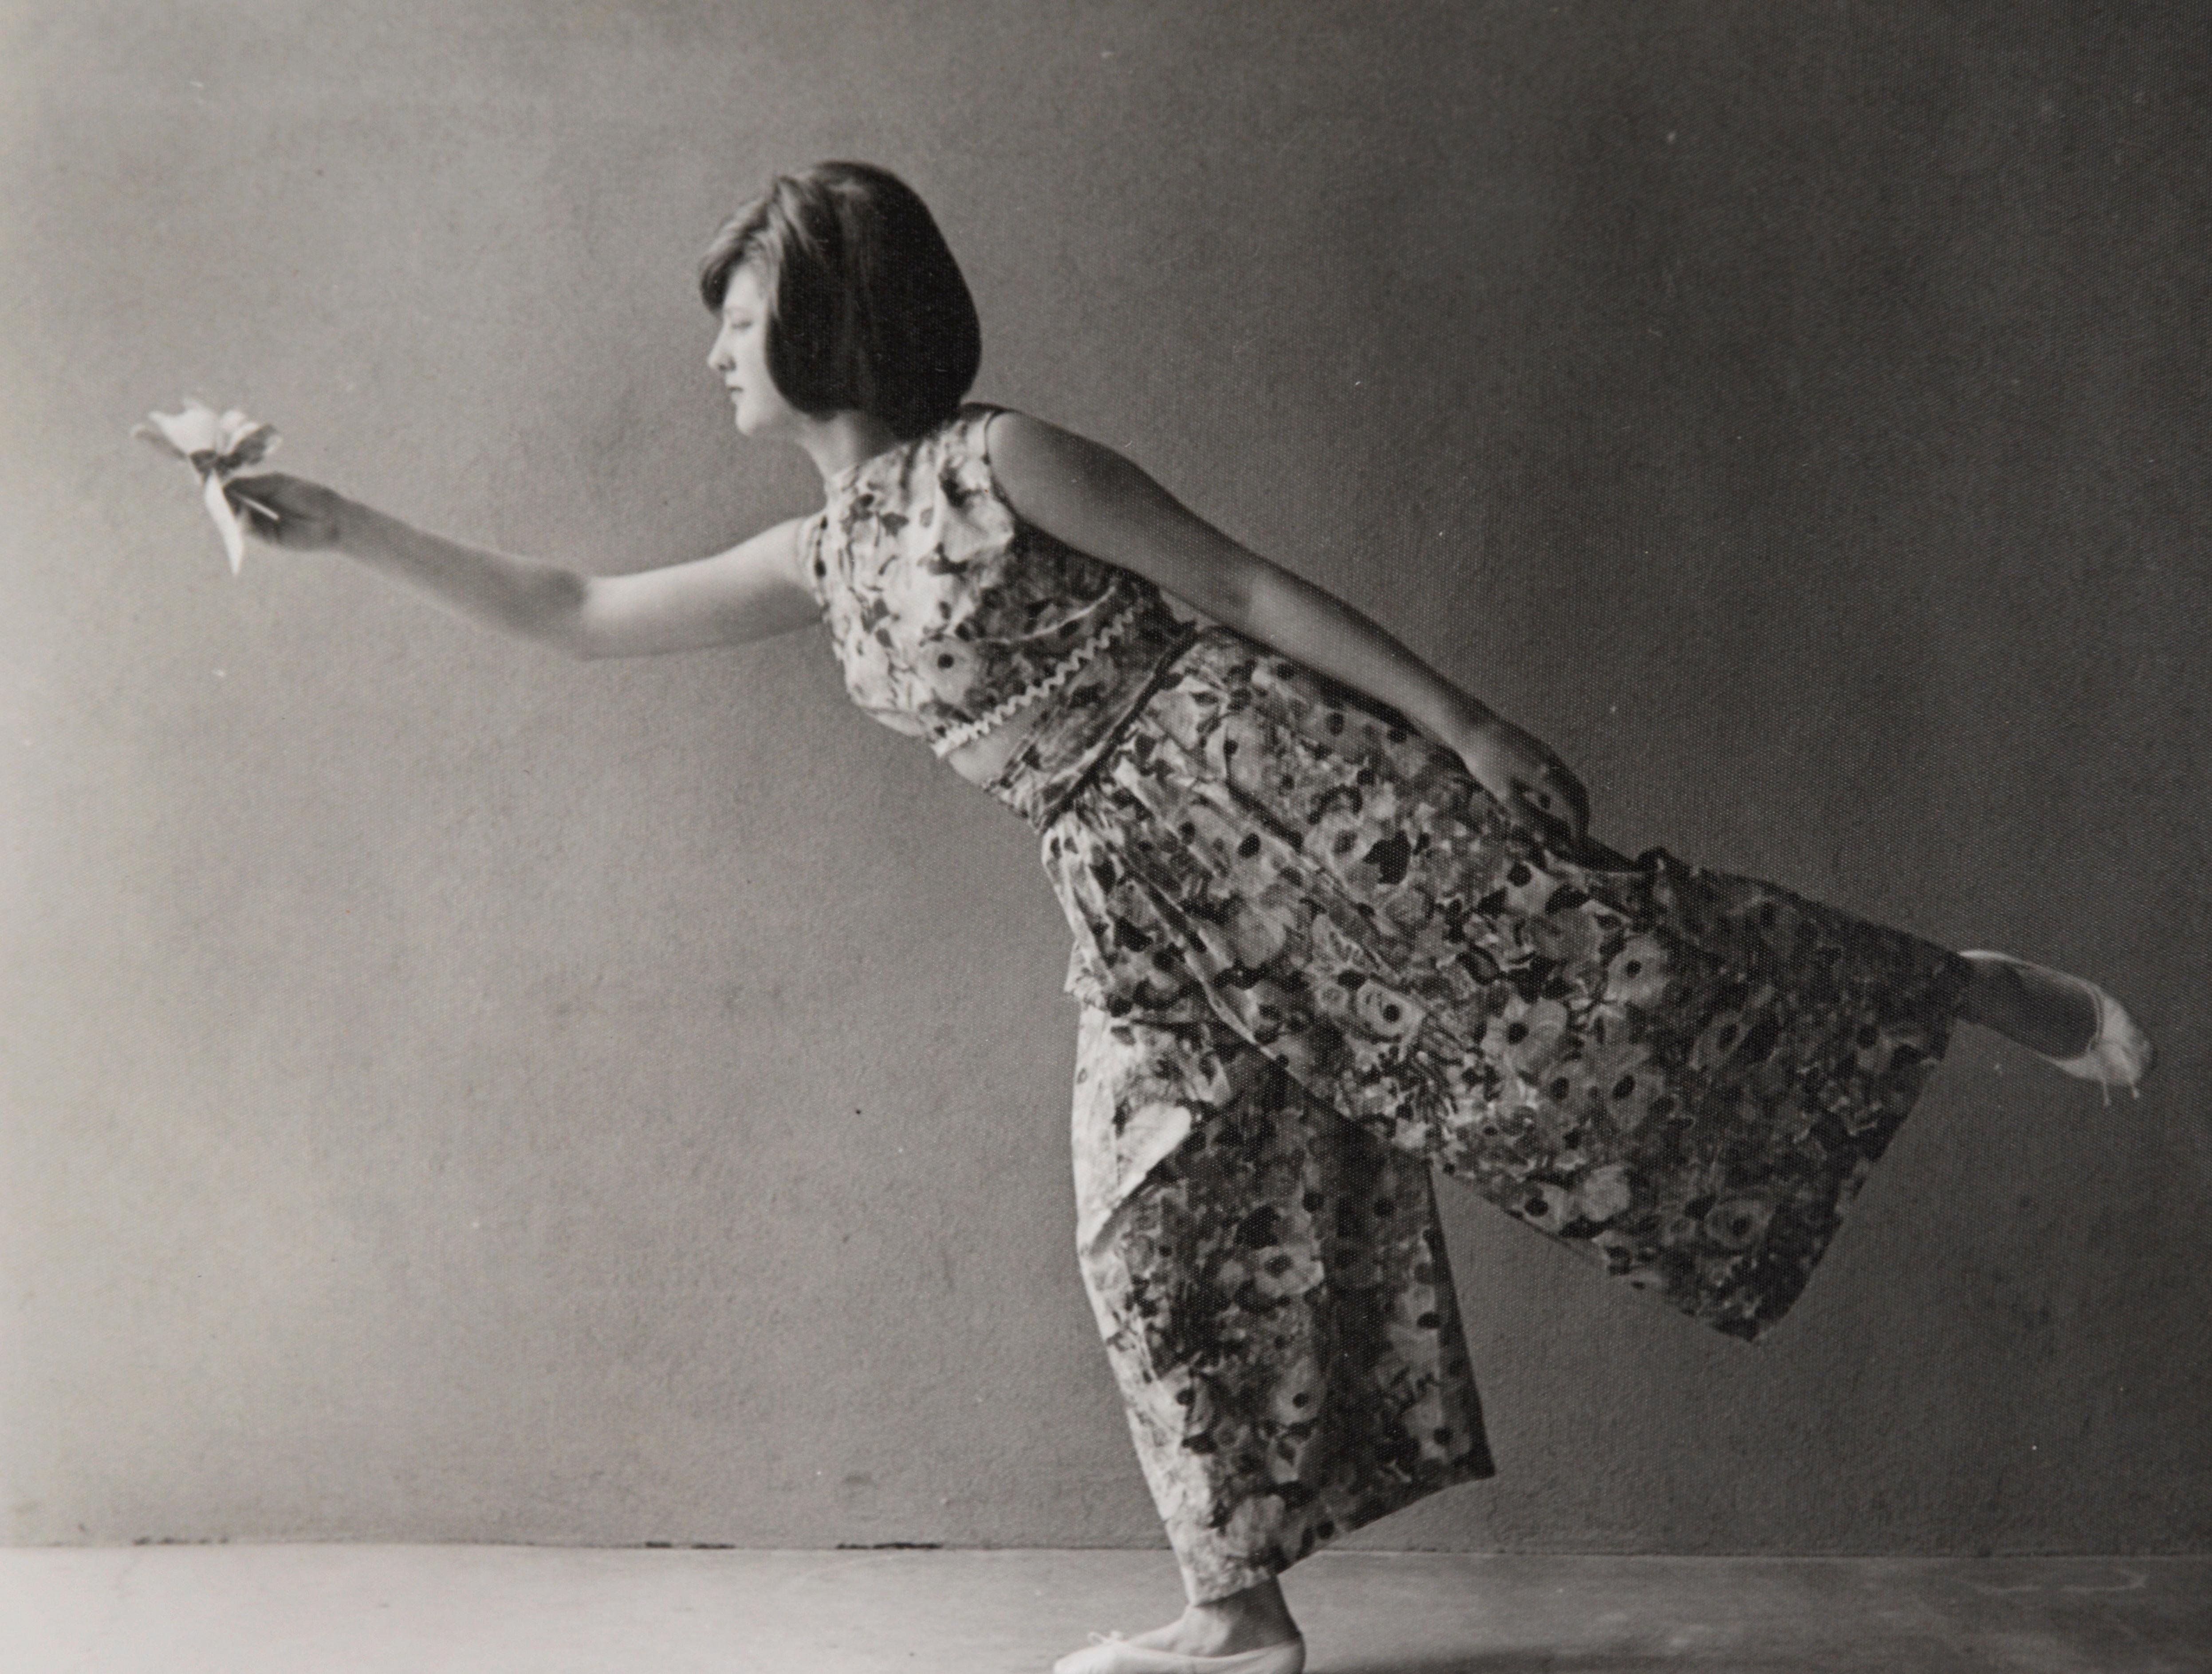 Frau in Ballettpose, die eine Blume hält - San Francisco Richard Edwards im Angebot 2